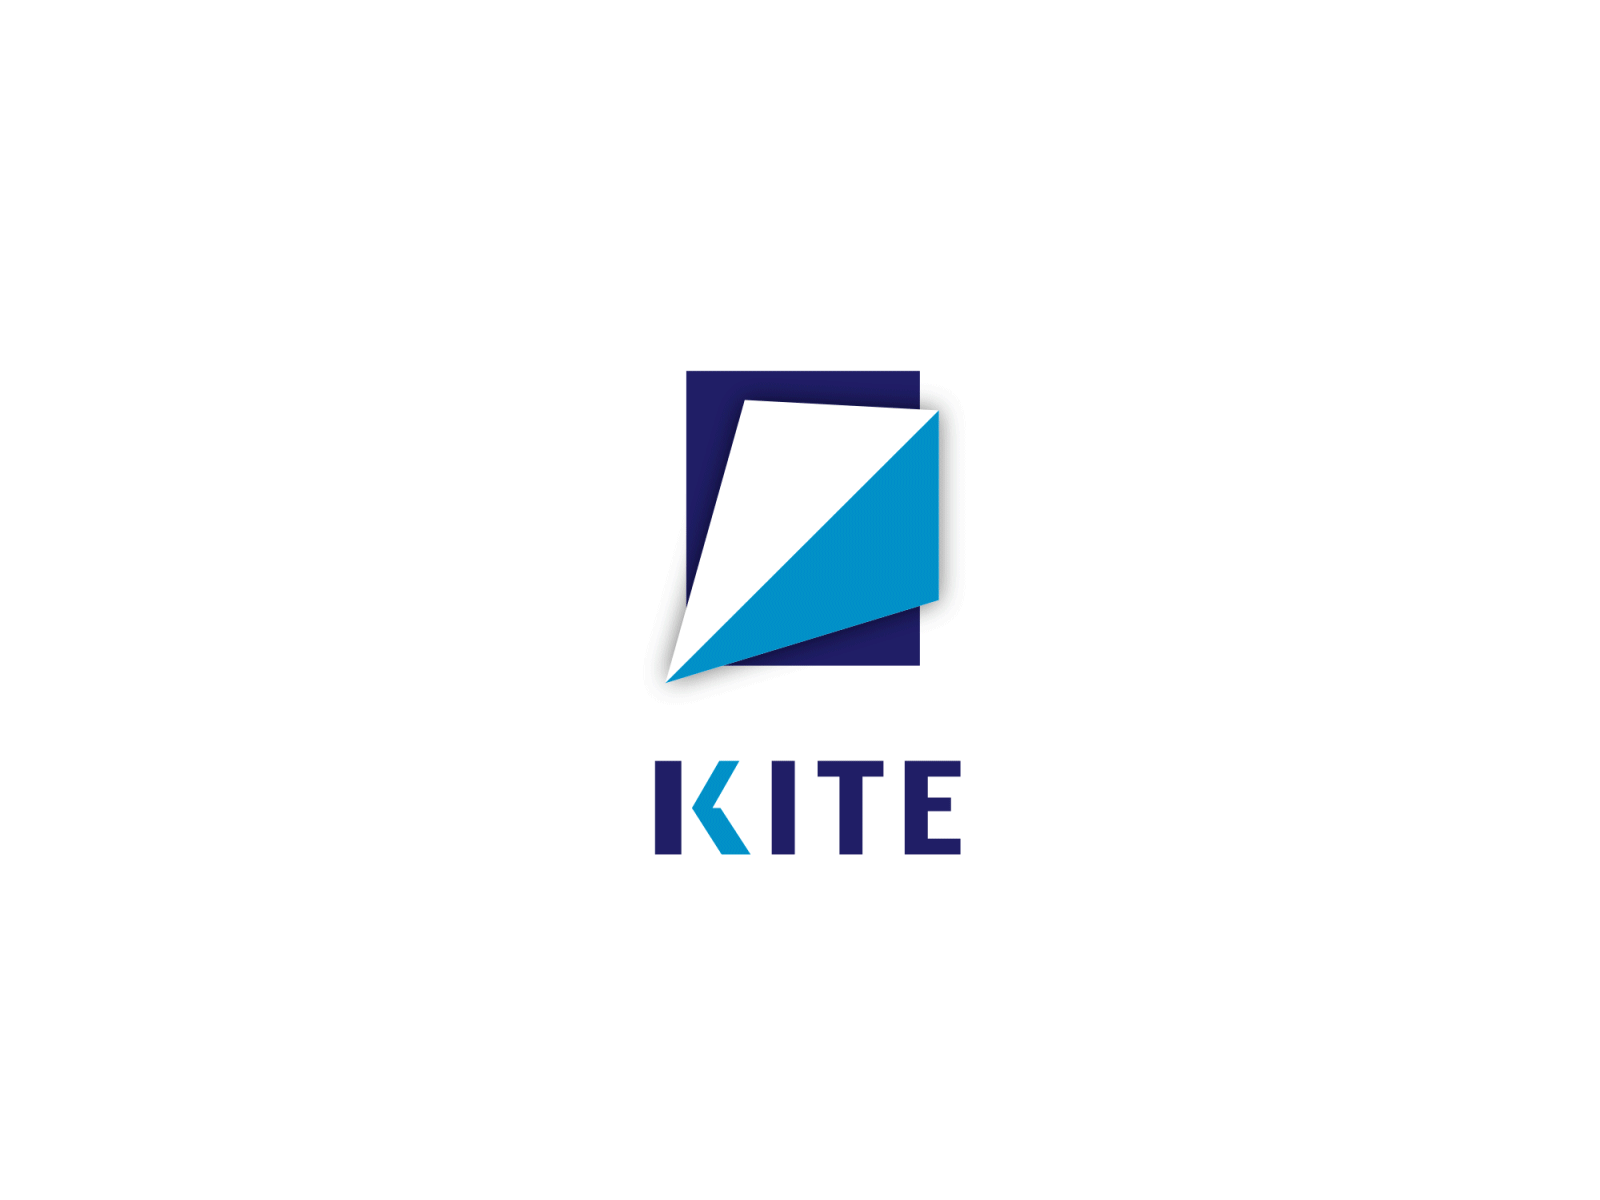 Kite logo animation